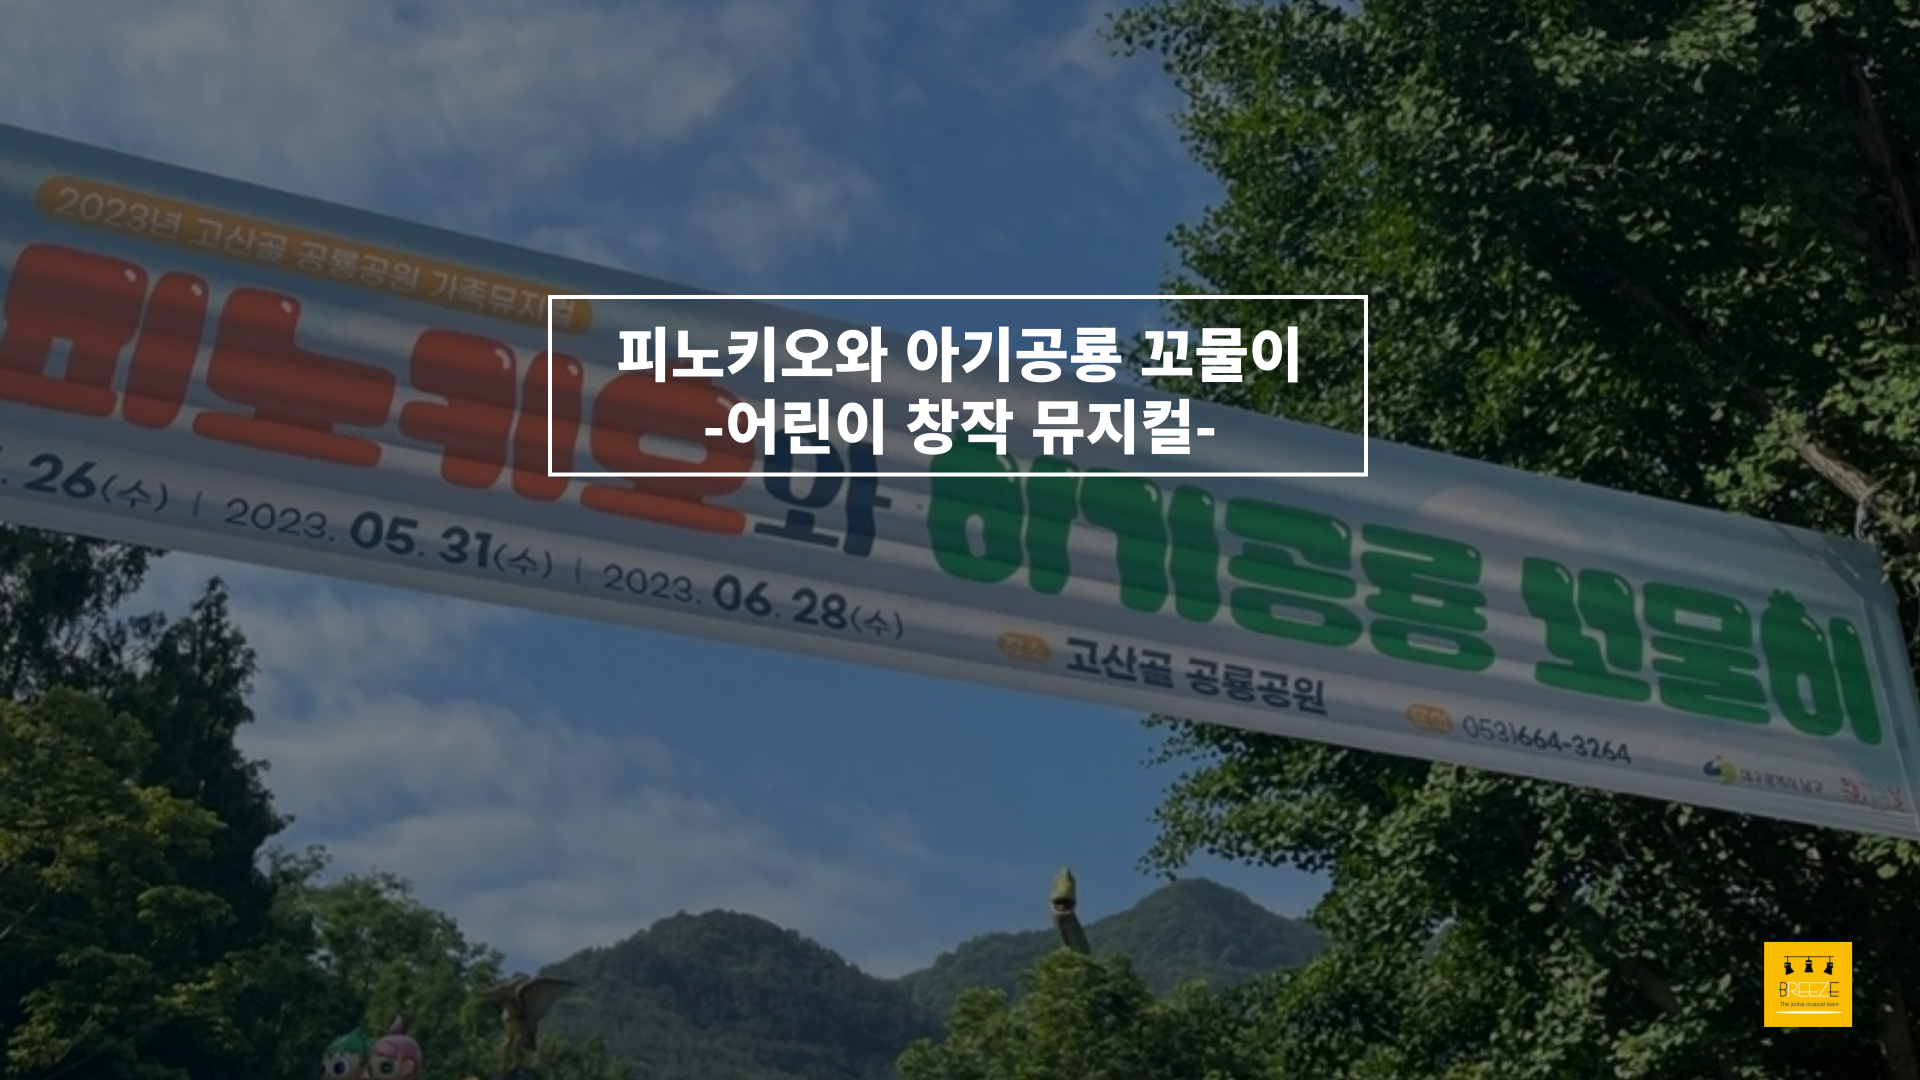 20230531 고산골 공룡공원 상설 어린이 뮤지컬 <피노키오와 아기공룡 꼬물이>